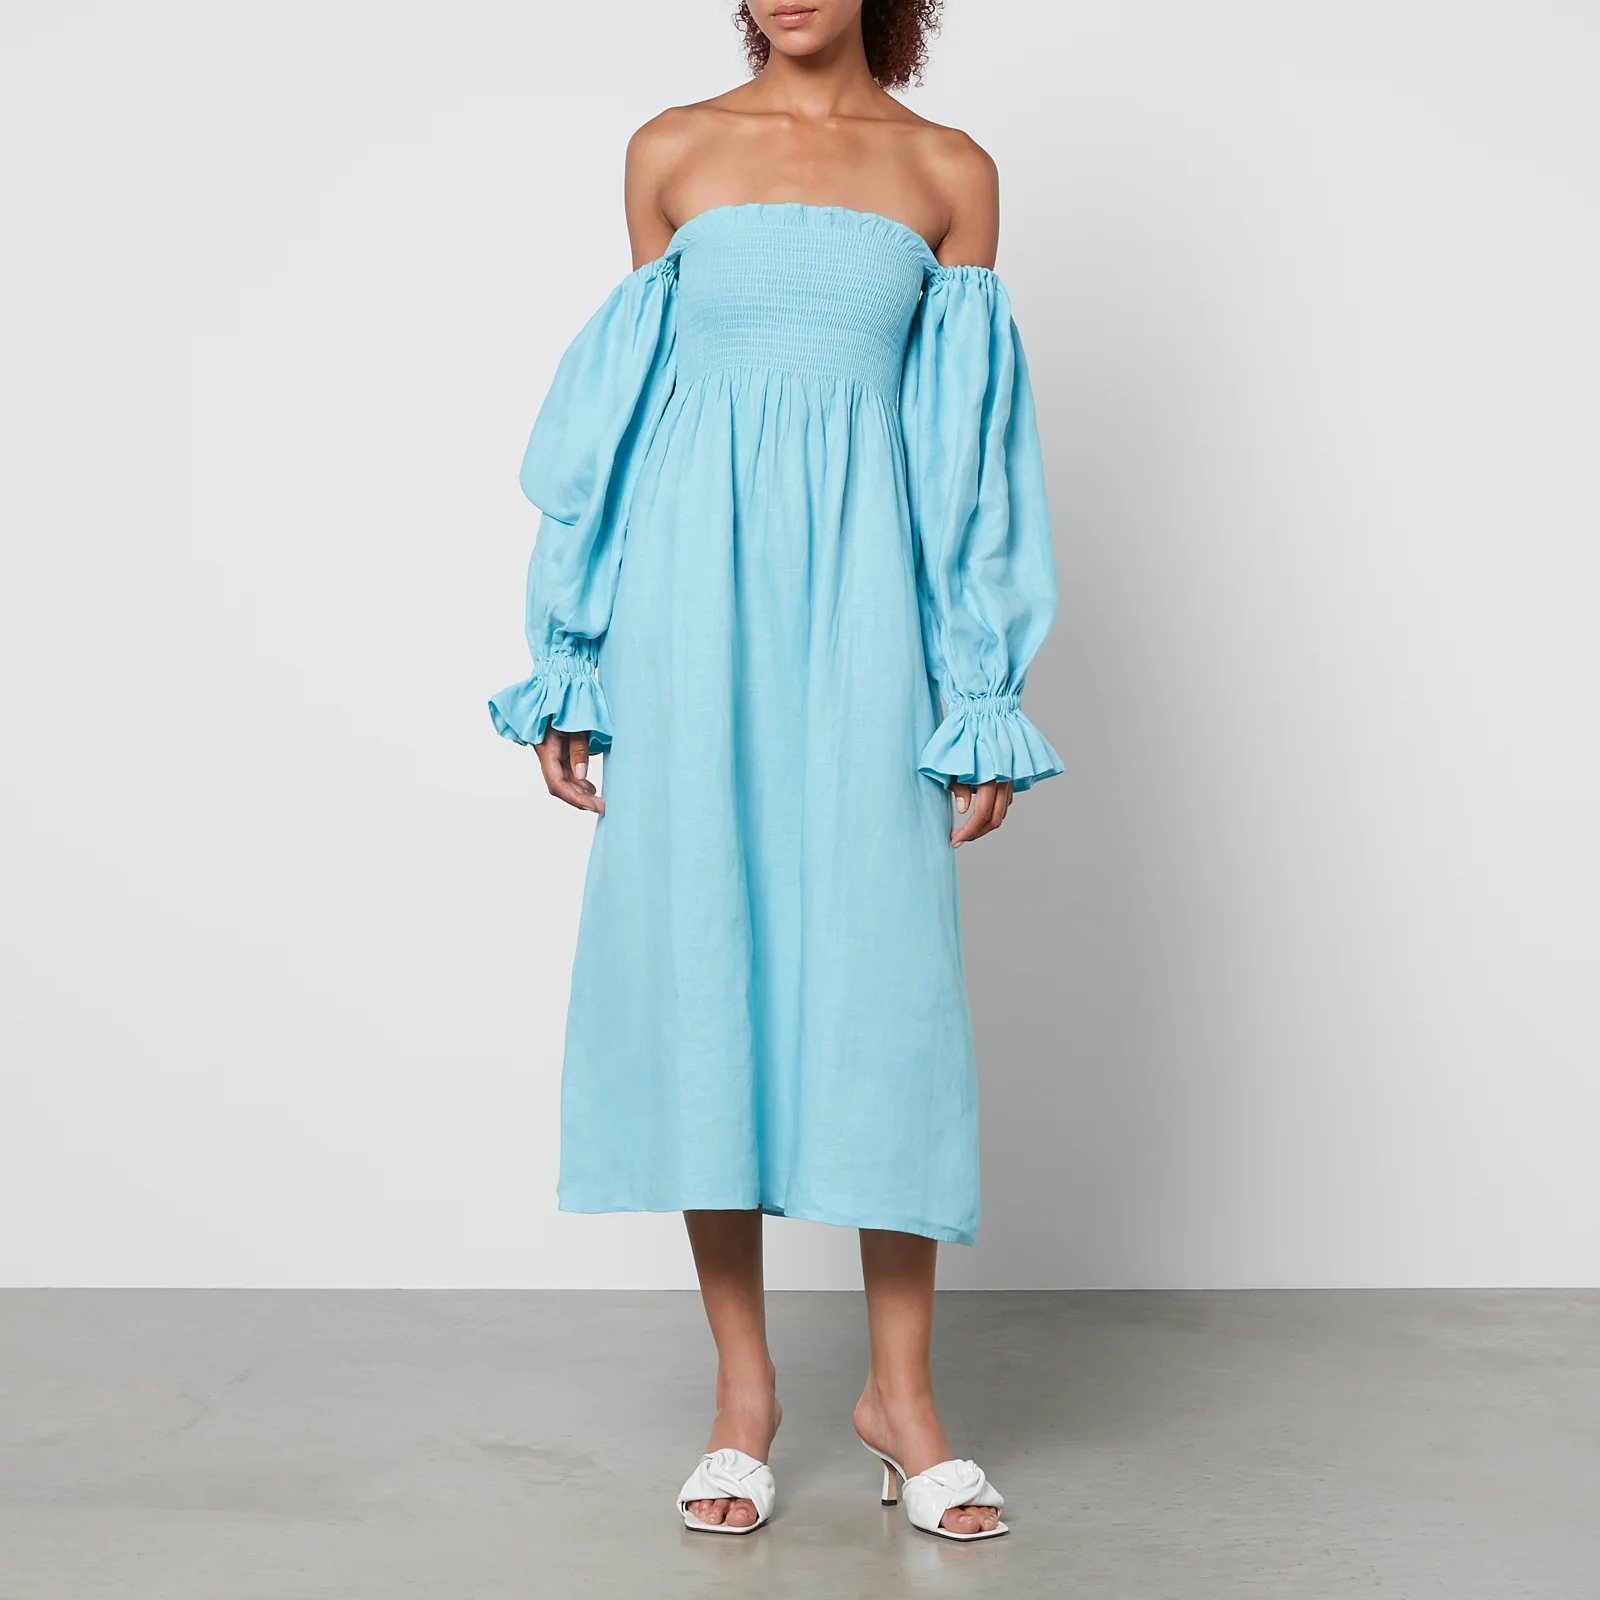 Sleeper Atlanta Shirred Linen Off-The-Shoulder Dress Image 1